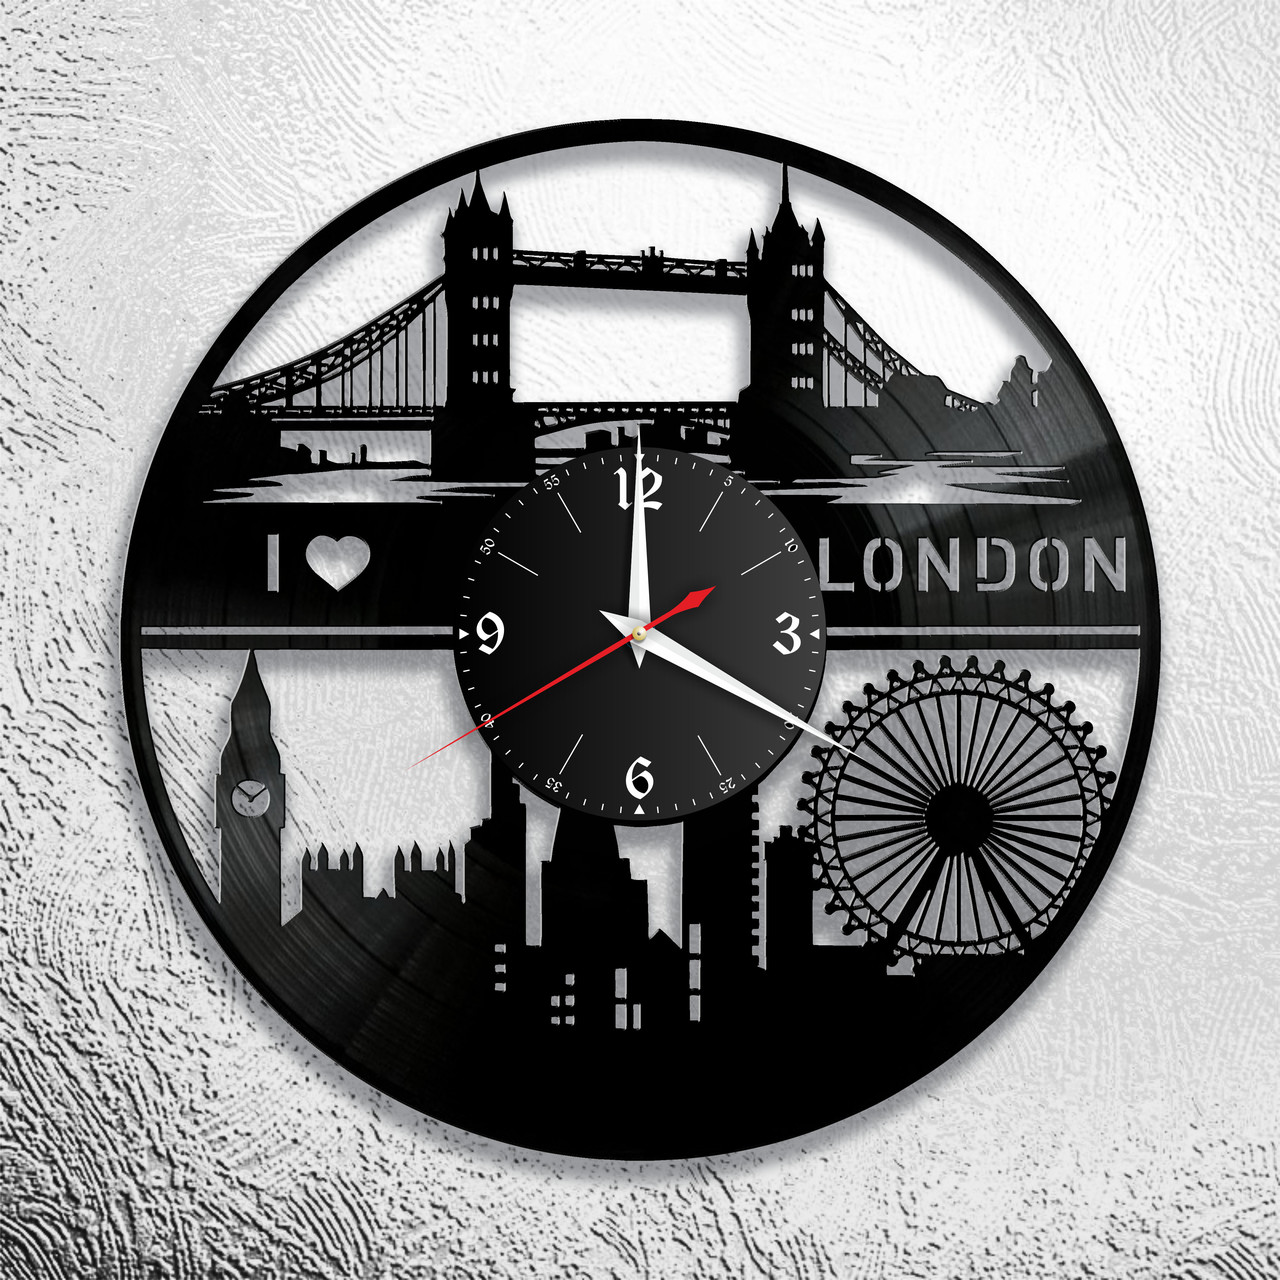 Оригинальные часы из виниловых пластинок  "Лондон" версия 2, фото 1